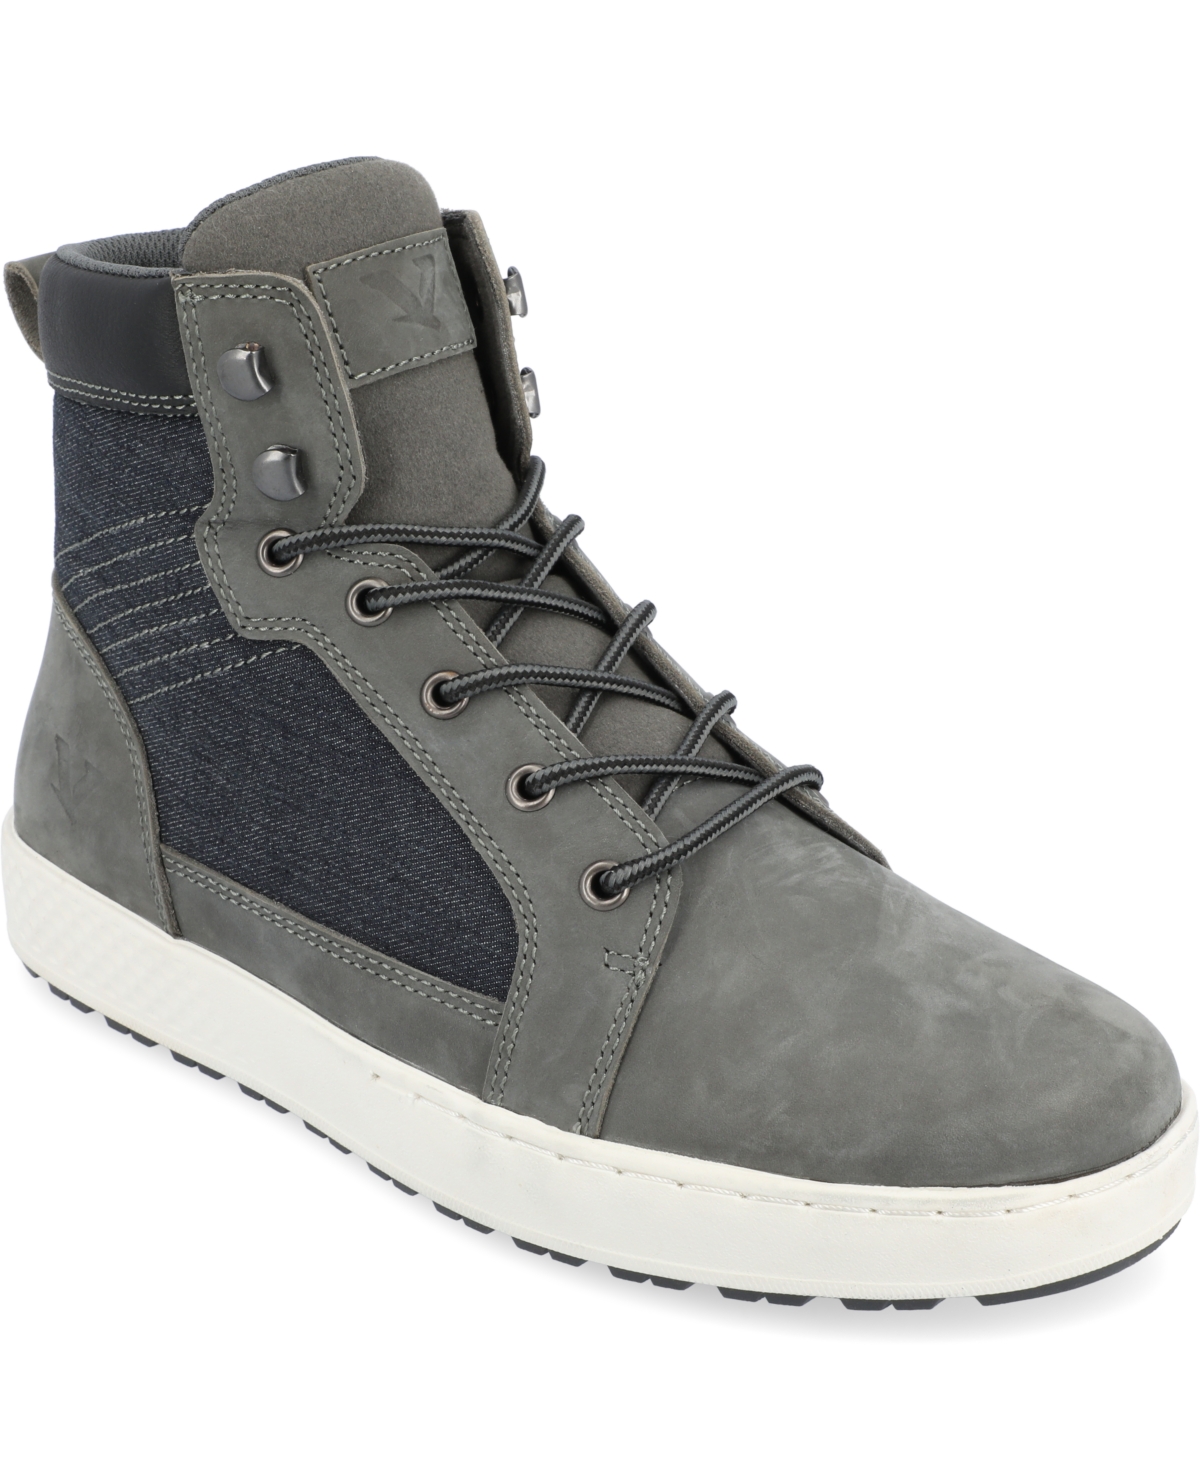 Men's Latitude Sneakers Boots - Gray